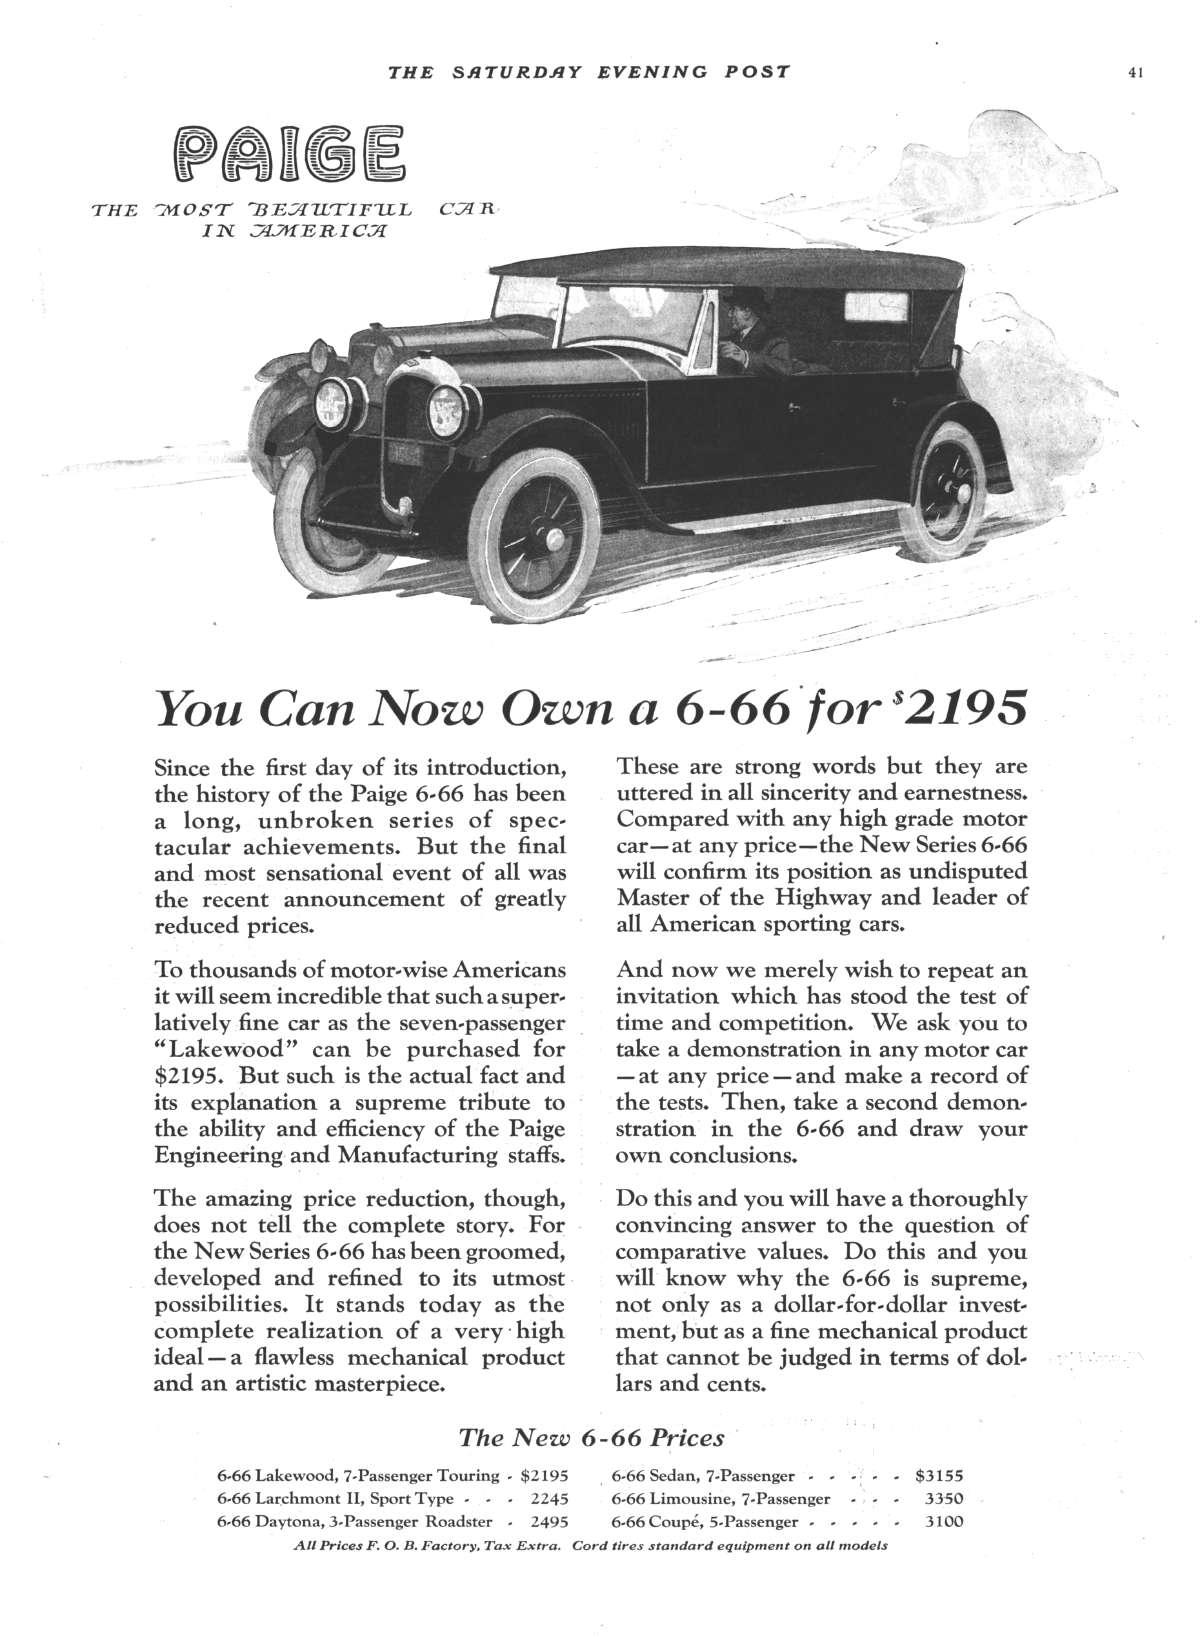 1922 6-66